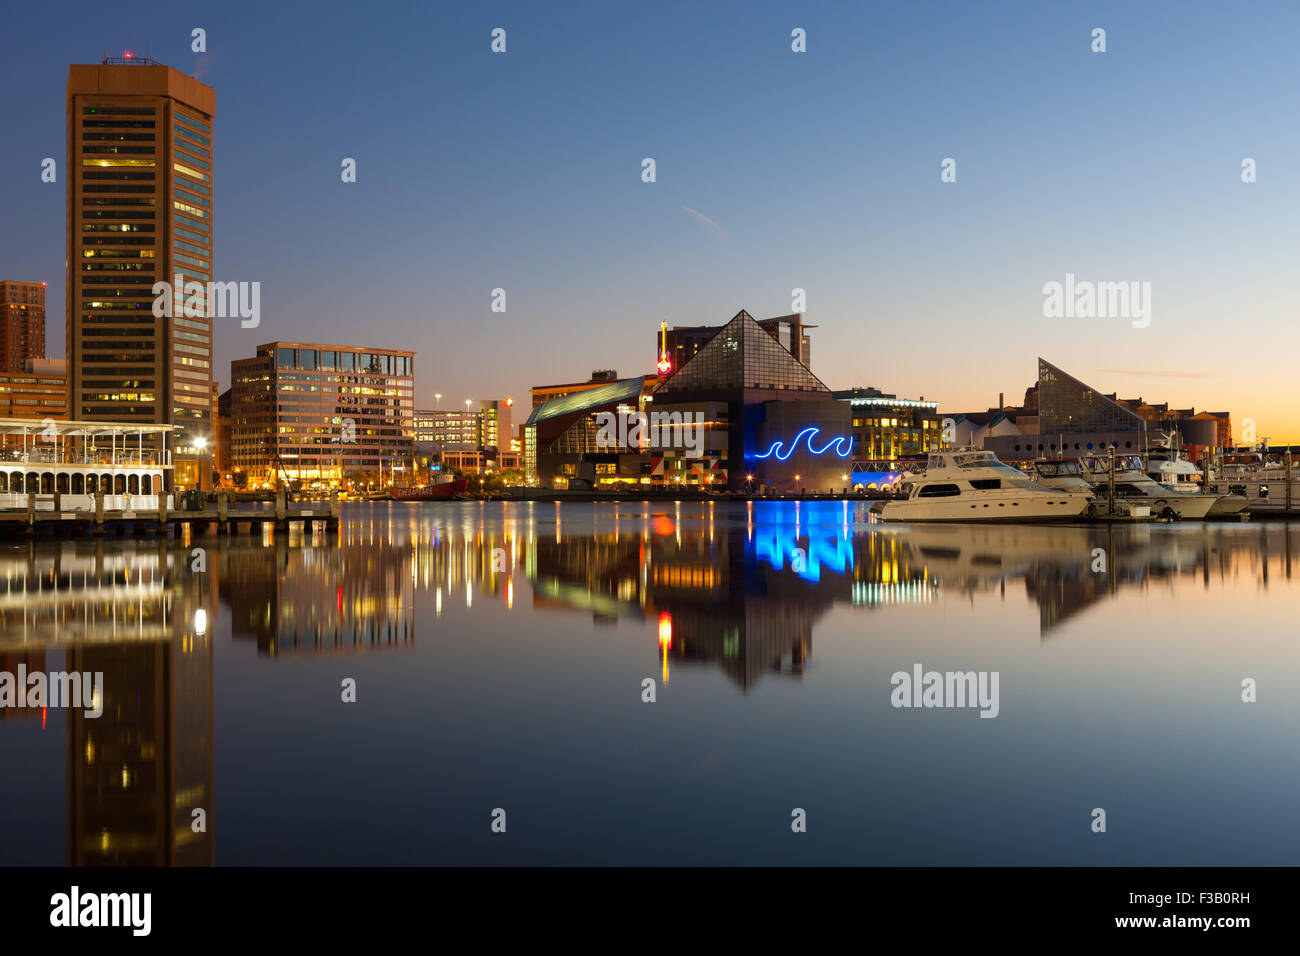 Toits de Baltimore à l'aube, y compris le World Trade Center et l'Aquarium National, se reflétant dans les eaux du port intérieur. Banque D'Images